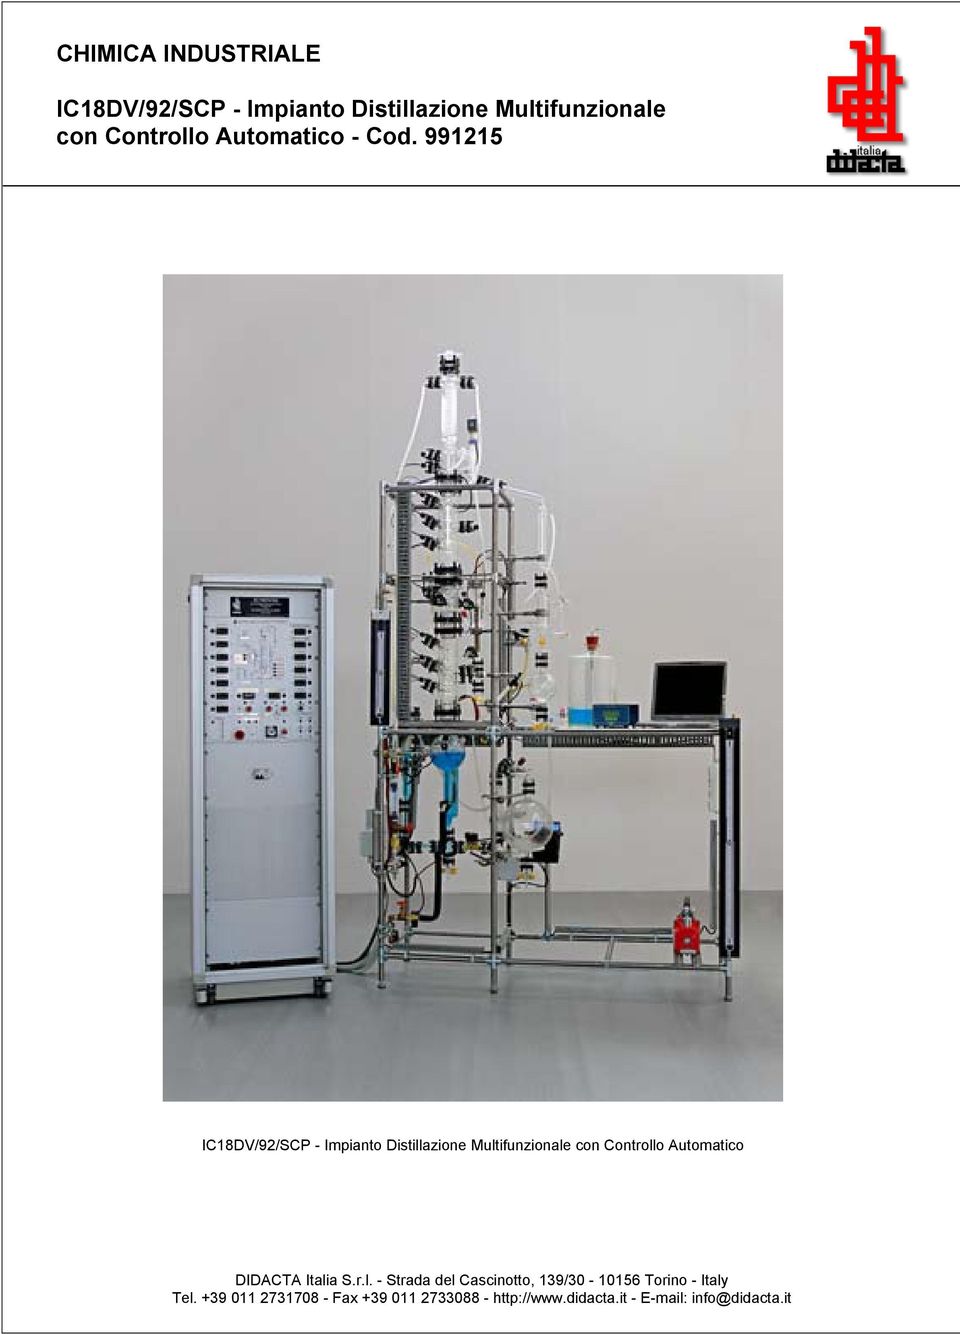 991215 IC18DV/92/SCP - Impianto Distillazione Multifunzionale con Controllo Automatico